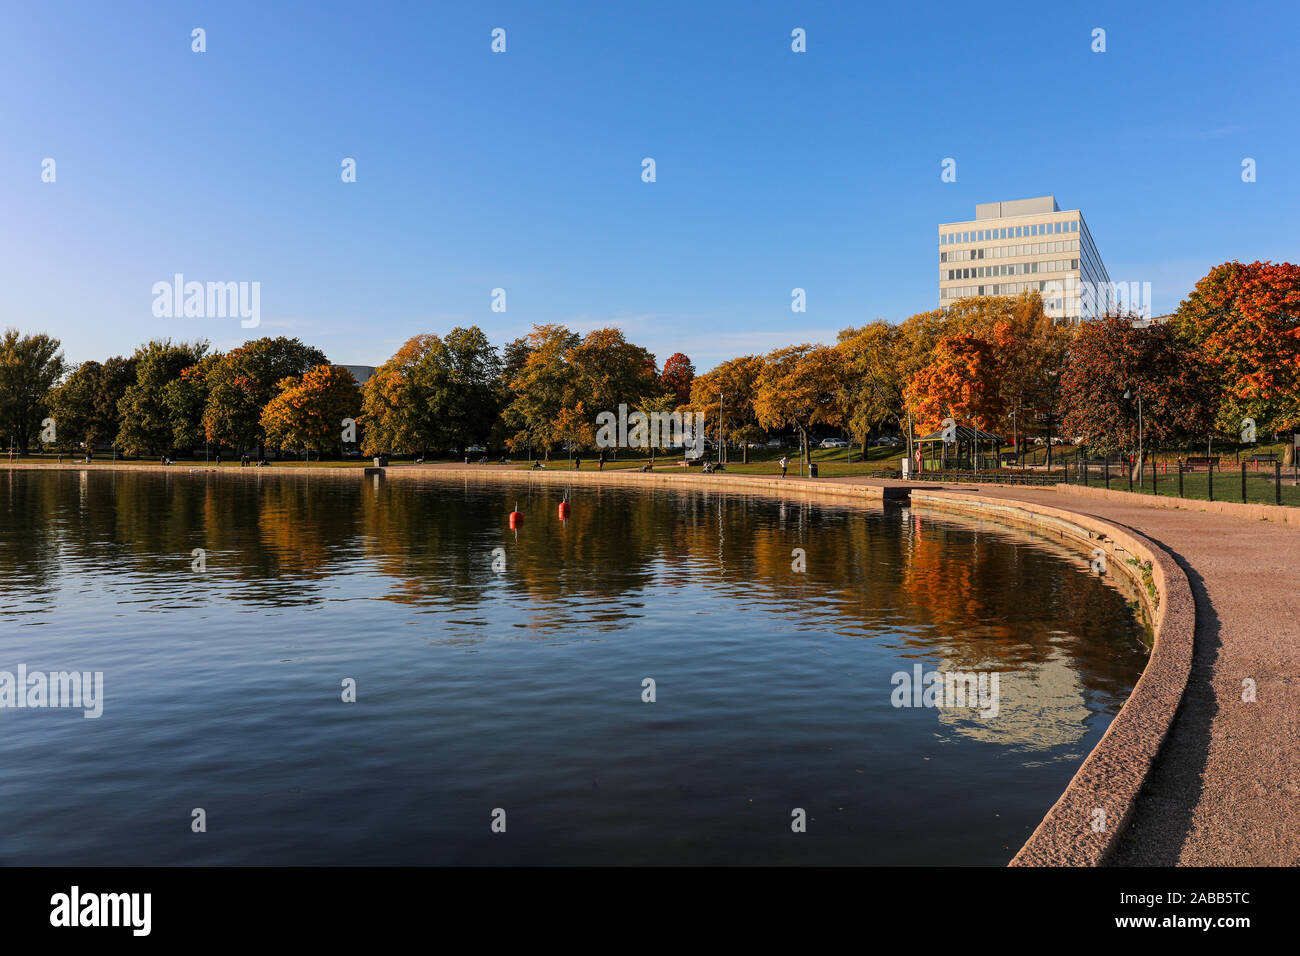 Eläintarhanlahti and Tokoinranta in autumn colors in Helsinki, Finland Stock Photo